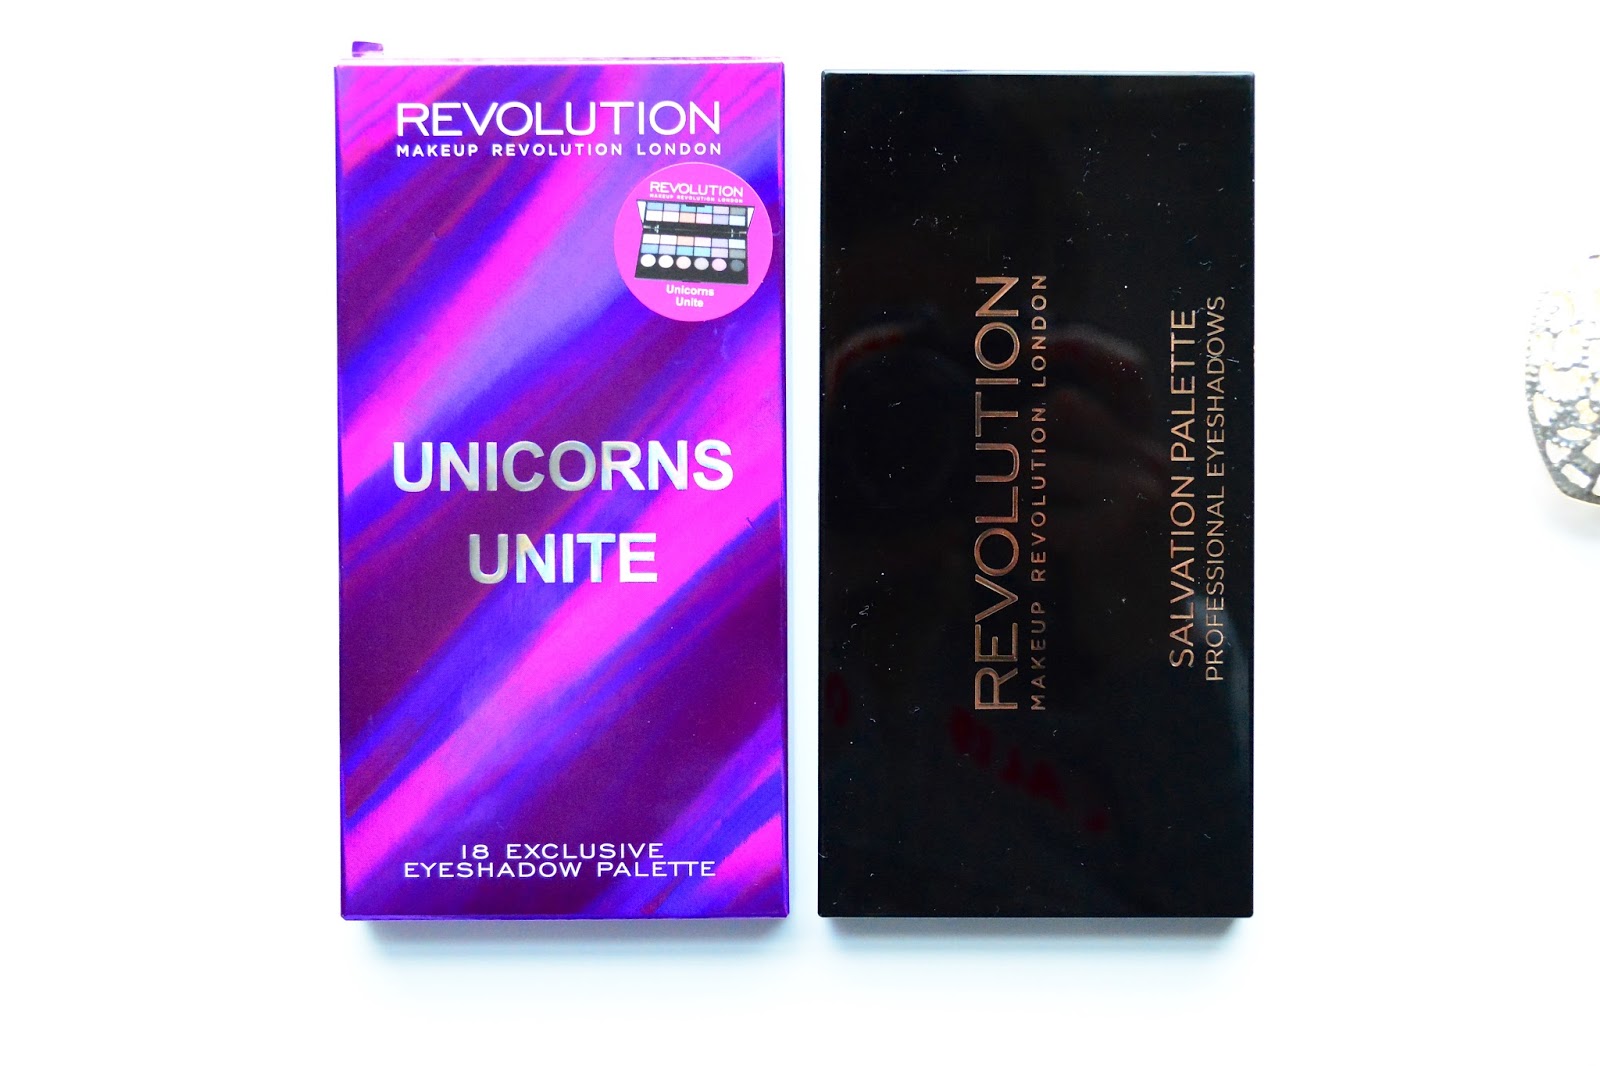 Makeup revolution unicorns unite